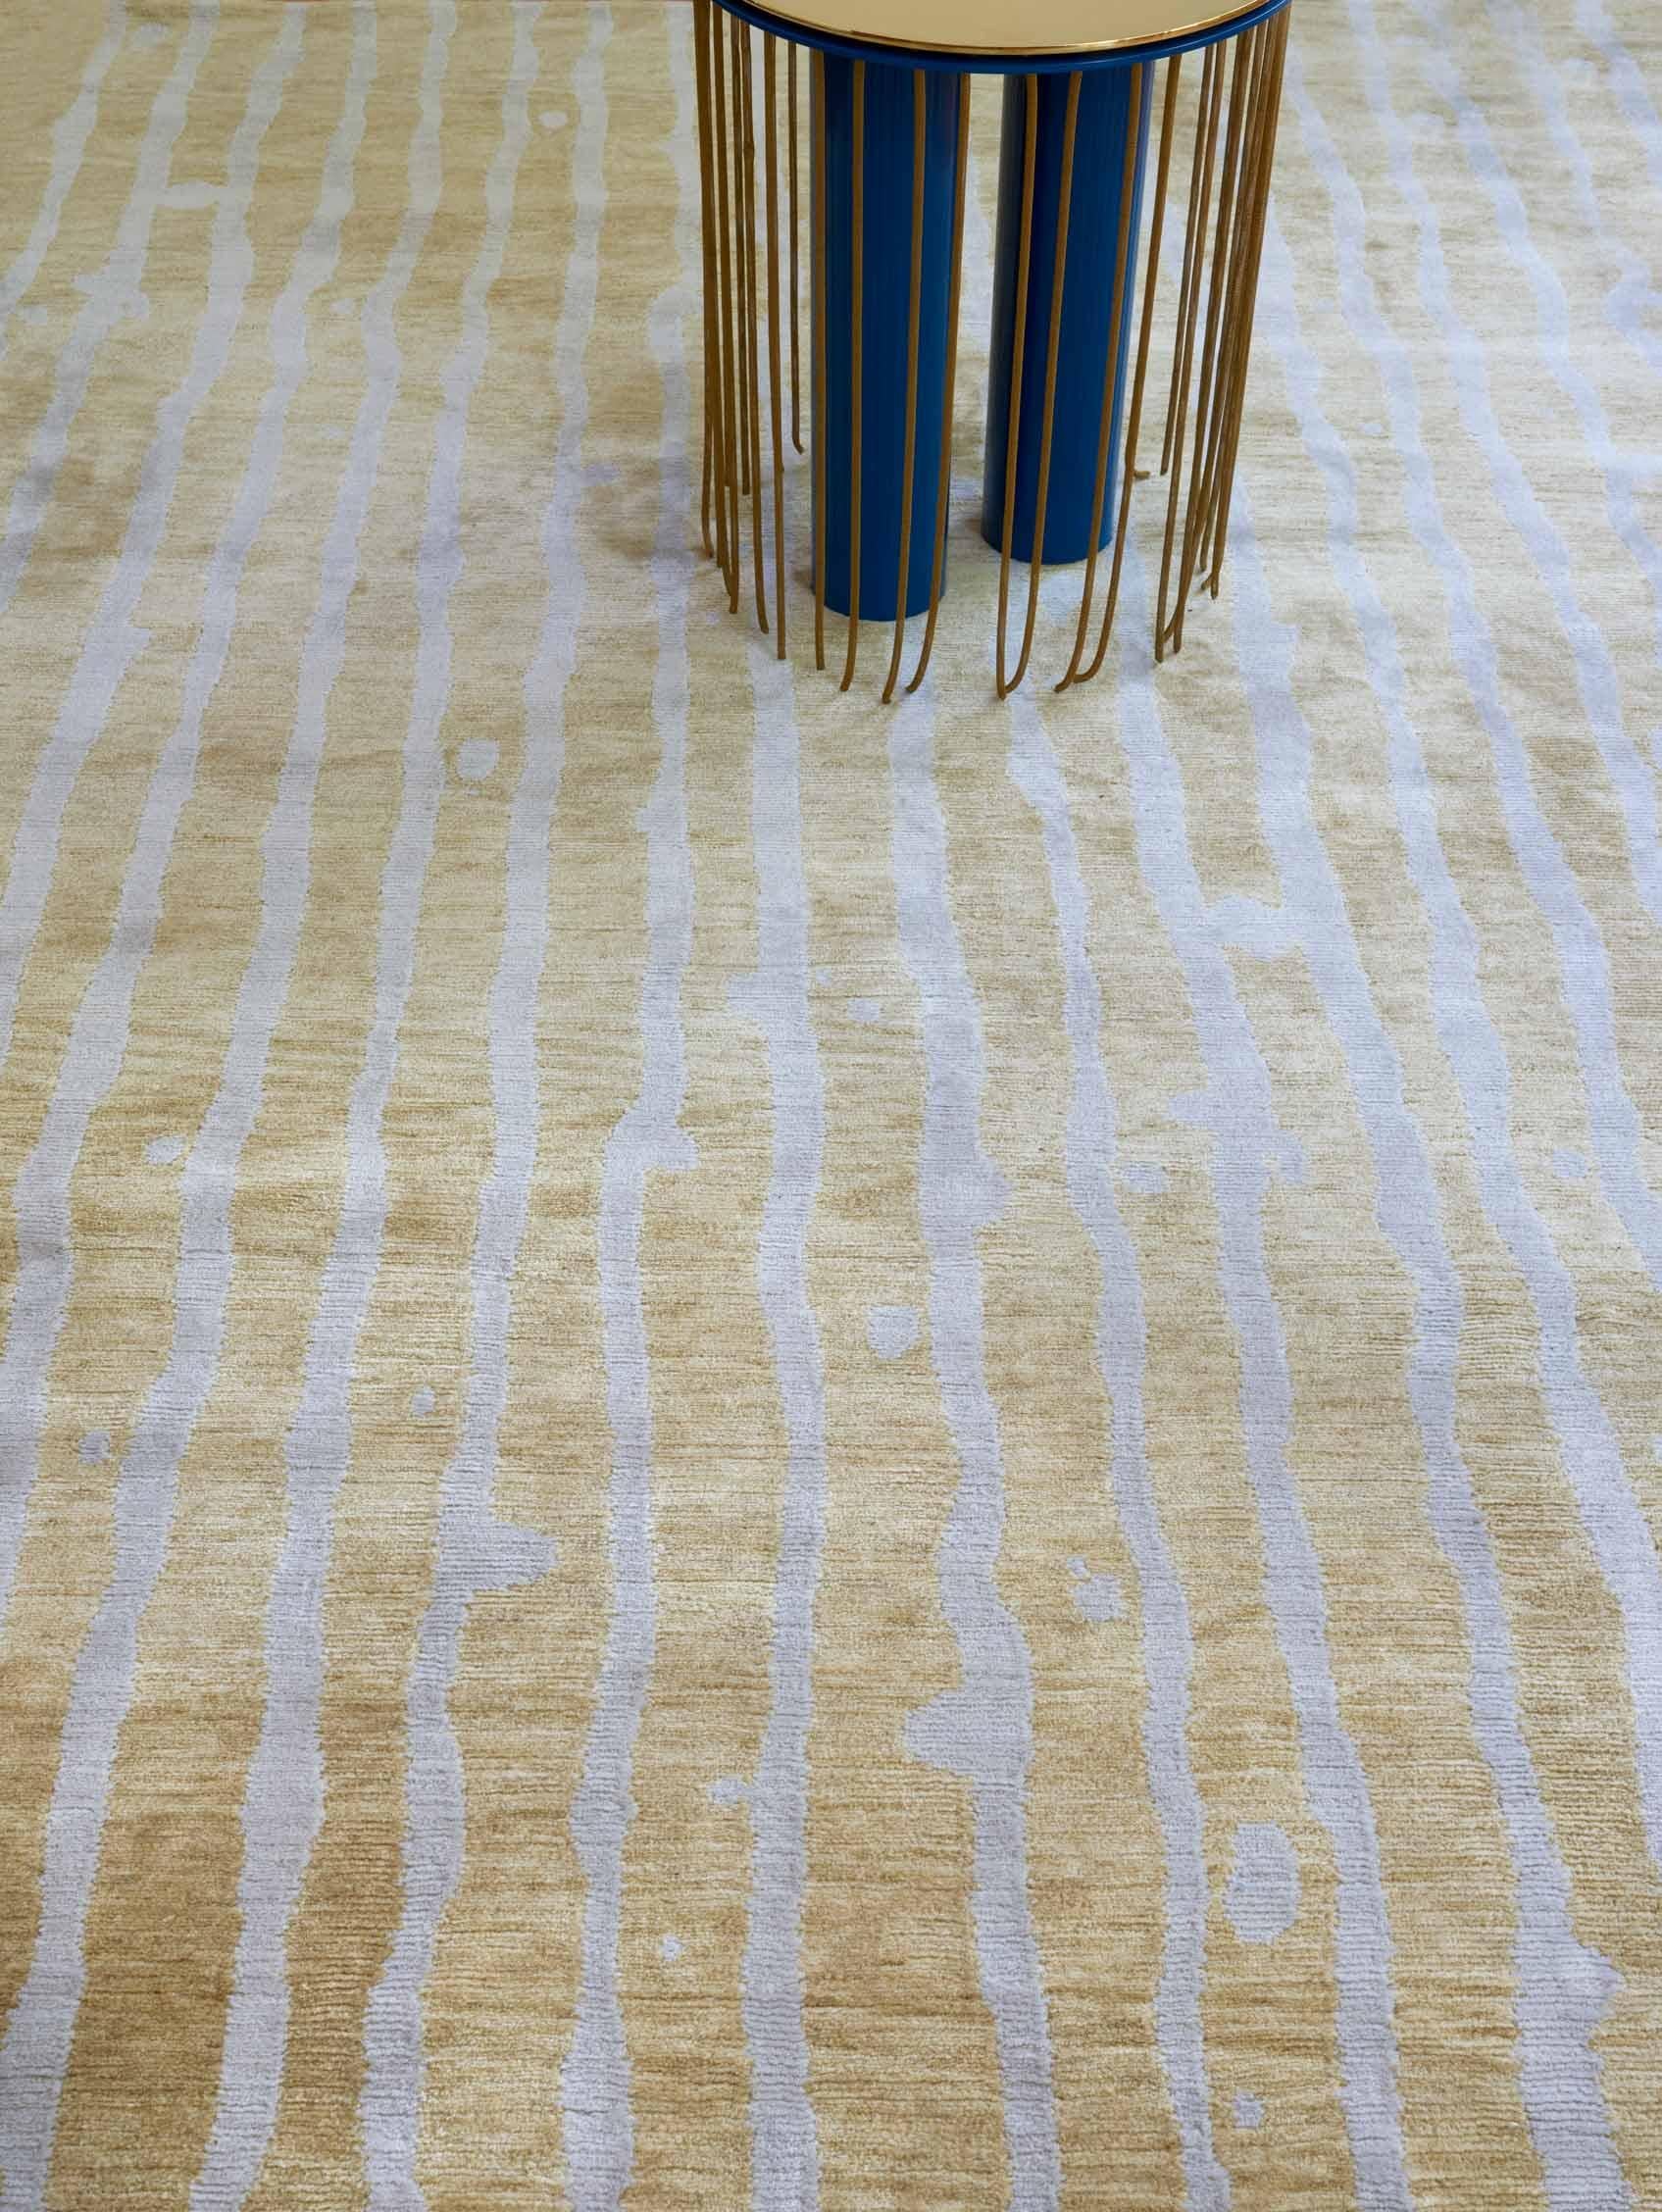 Muster des Teppichs: Drippy Stripe - Sage
MATERIAL: 100% Merinowolle
Qualität: Tibetisches Kreuzgeflecht, handgewebt 
Größe: 5'-0